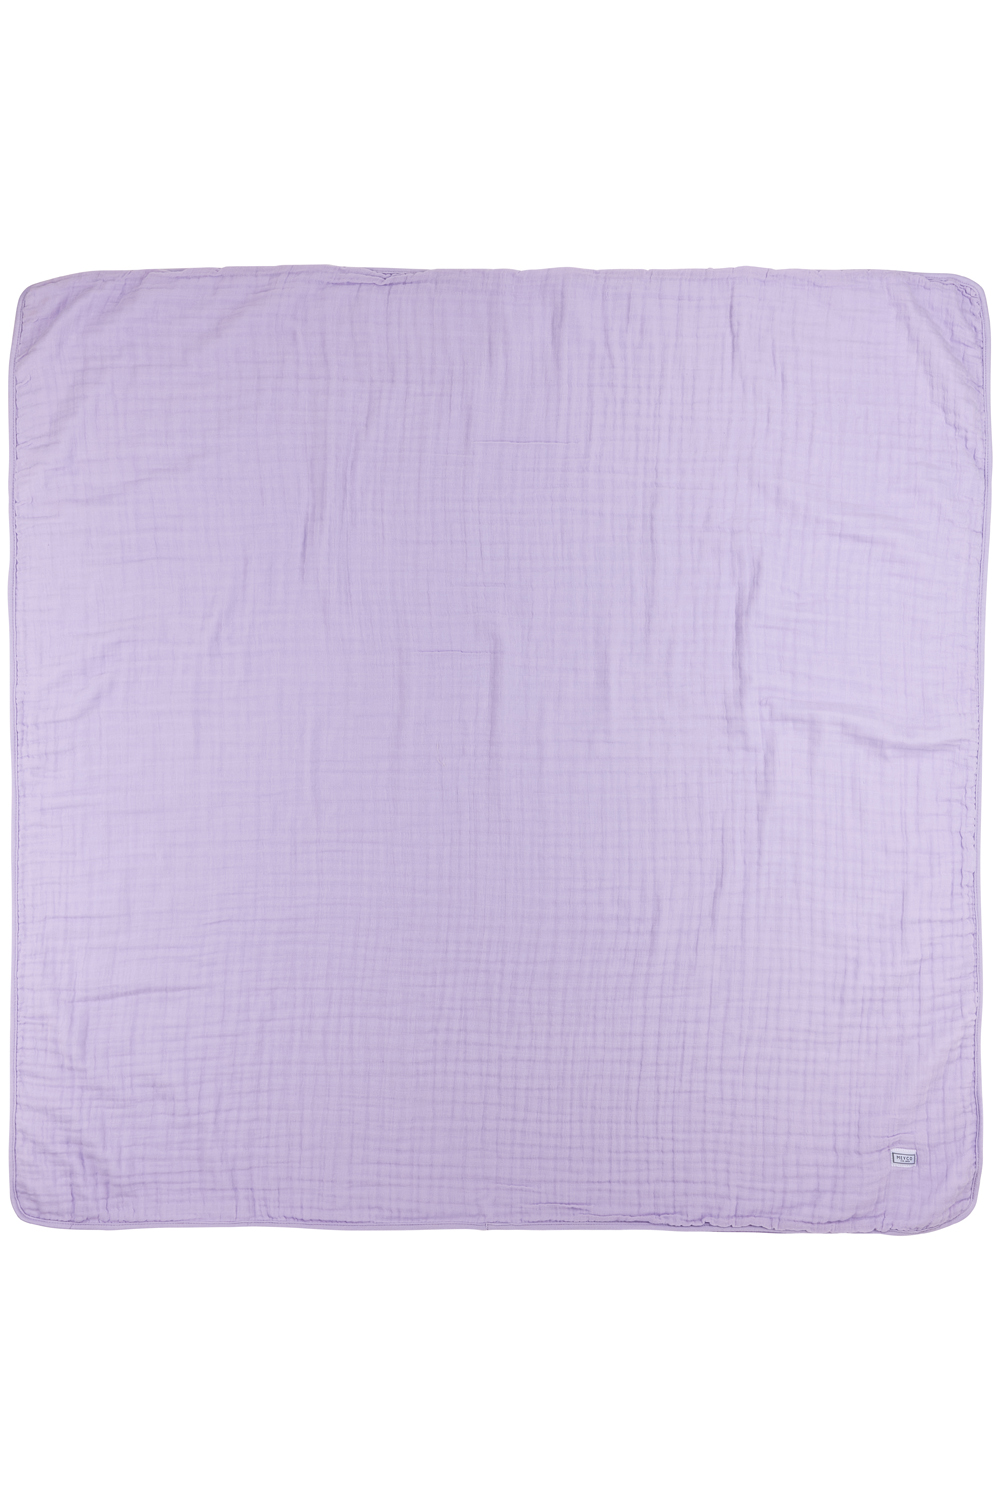 Muslin Multi Cloth Uni - Soft Lilac - 120x120cm